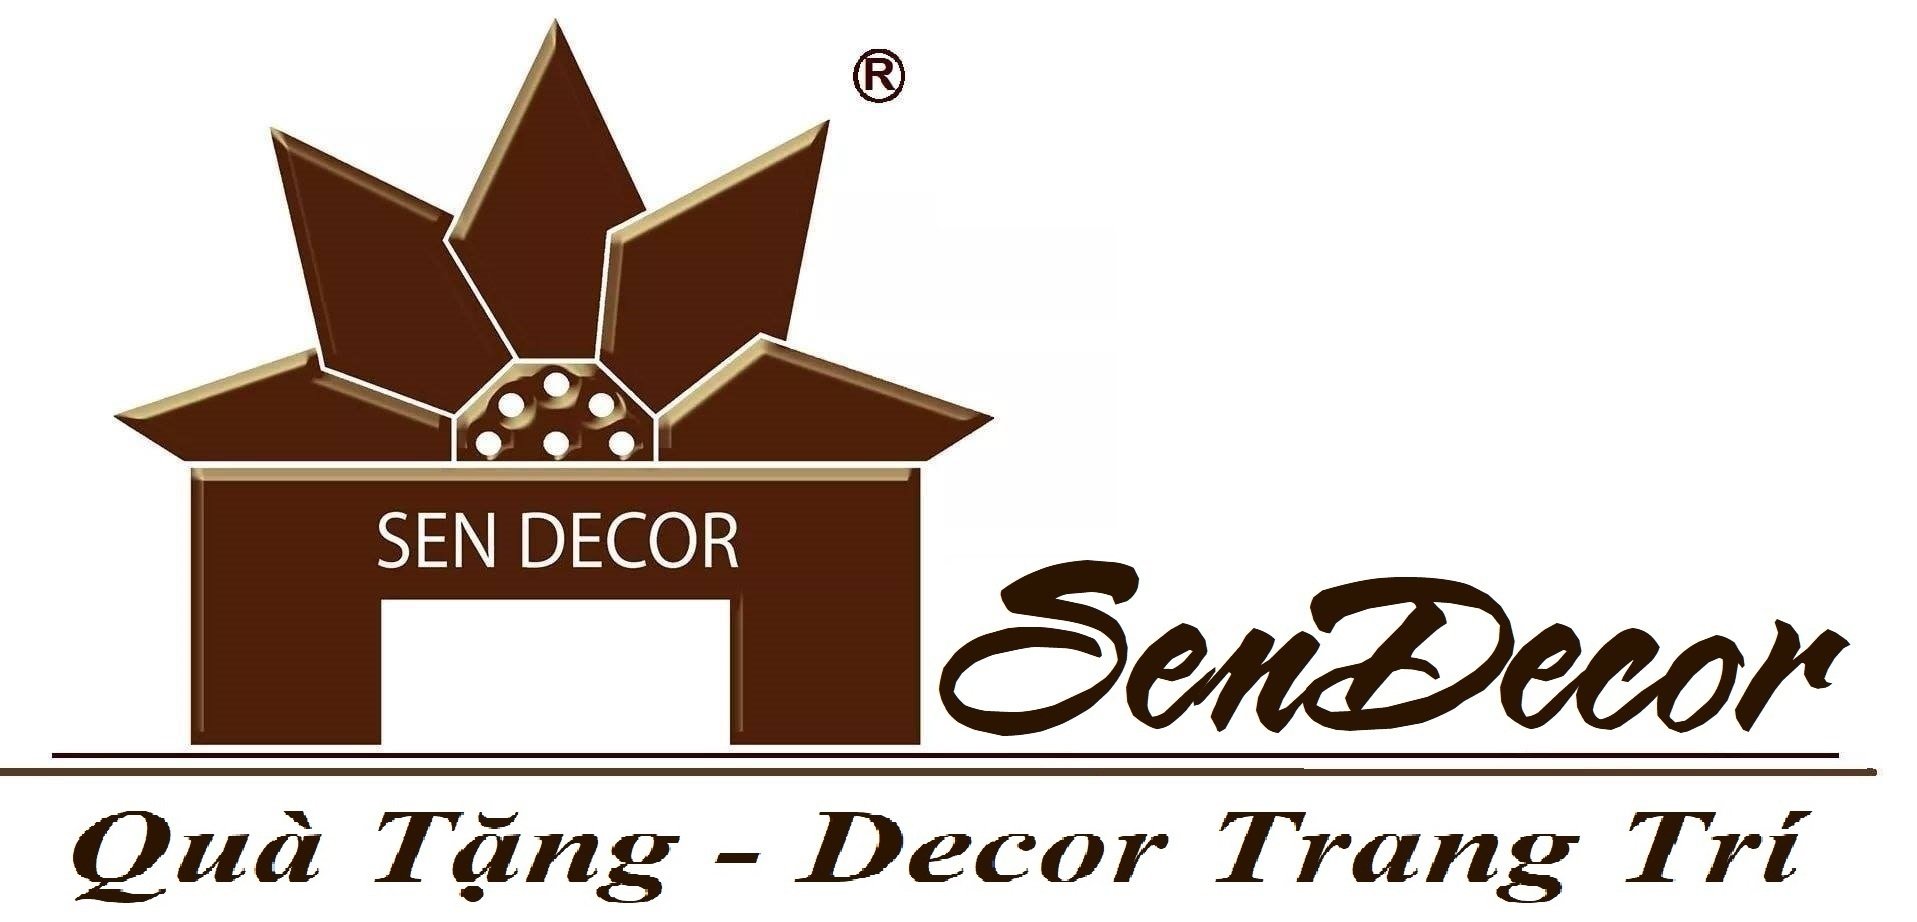 Sendecor.net – Trang web nổi tiếng và uy tín trong lĩnh vực decor